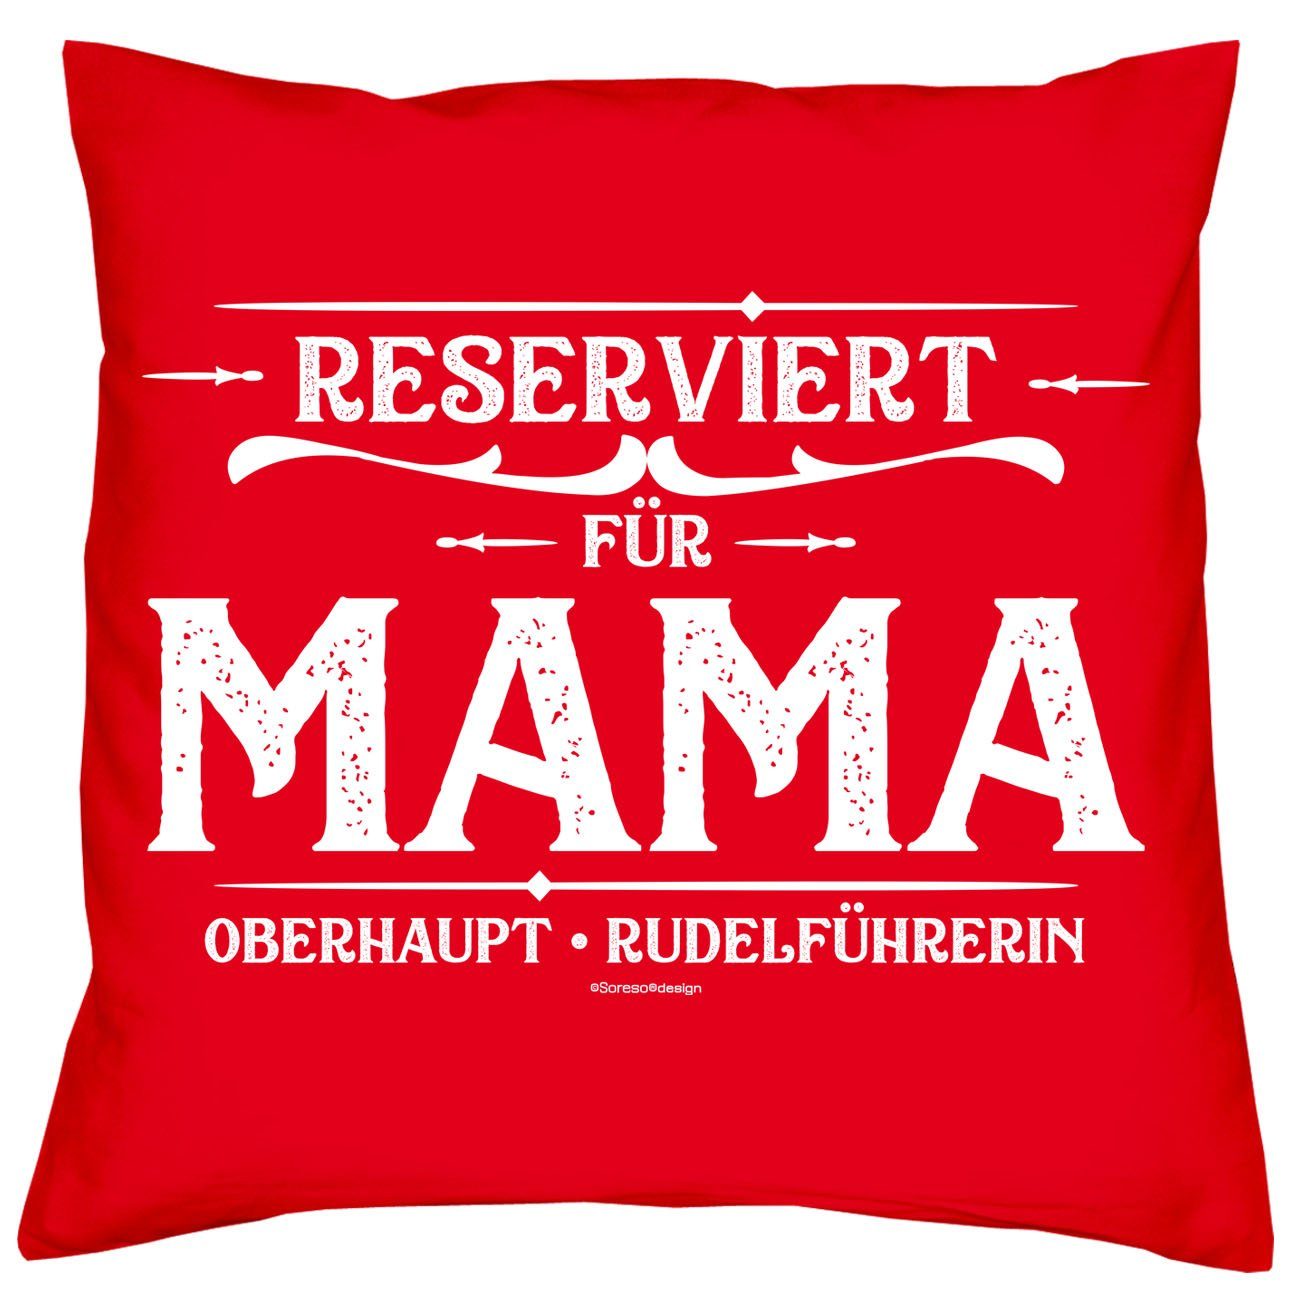 Soreso® Dekokissen Kissen Reserviert für & Geschenk Socken Geburtstagsgeschenk Sleep, Sprüche rot Mama